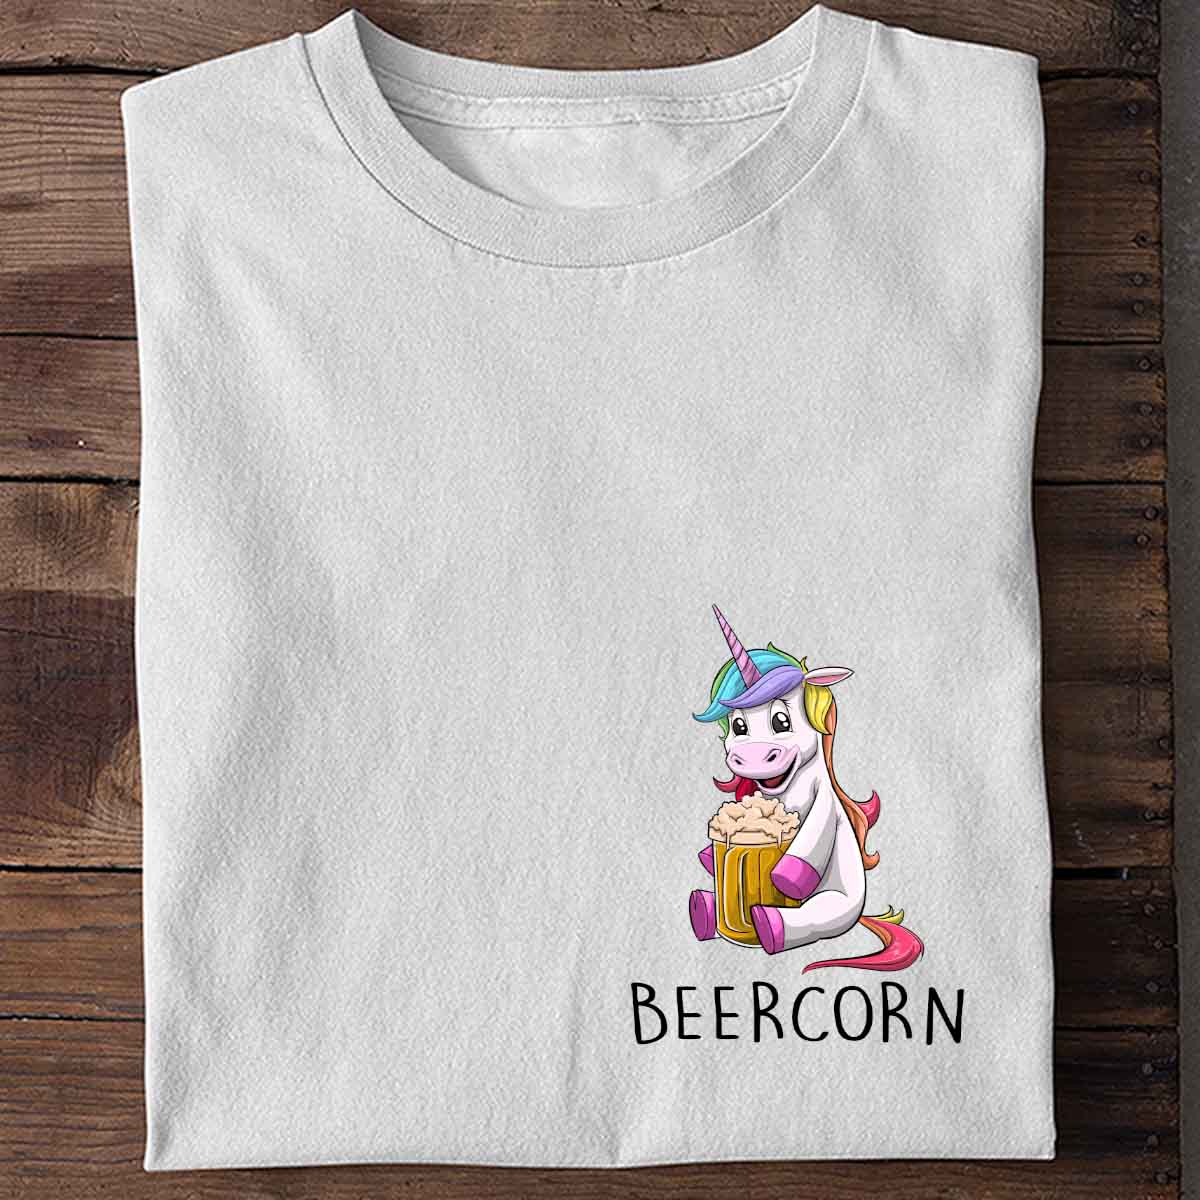 Beercorn - Shirt Unisex Chest